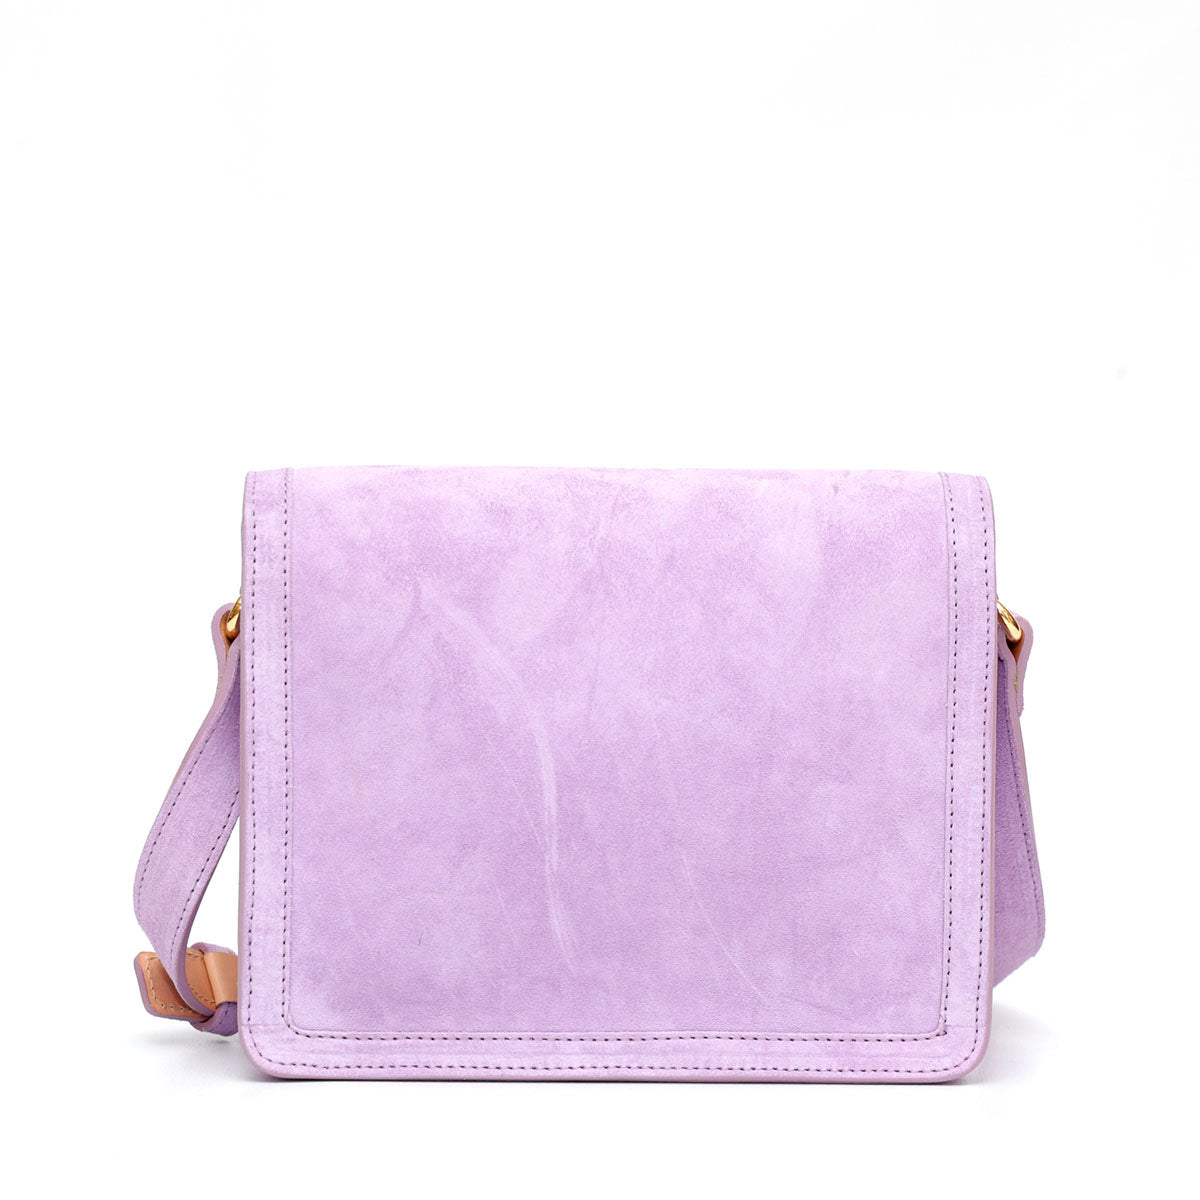 Cara bag,borsa donna a tracolla in pelle scamosciata lilla. Prodotta a mano da Pianigianibags